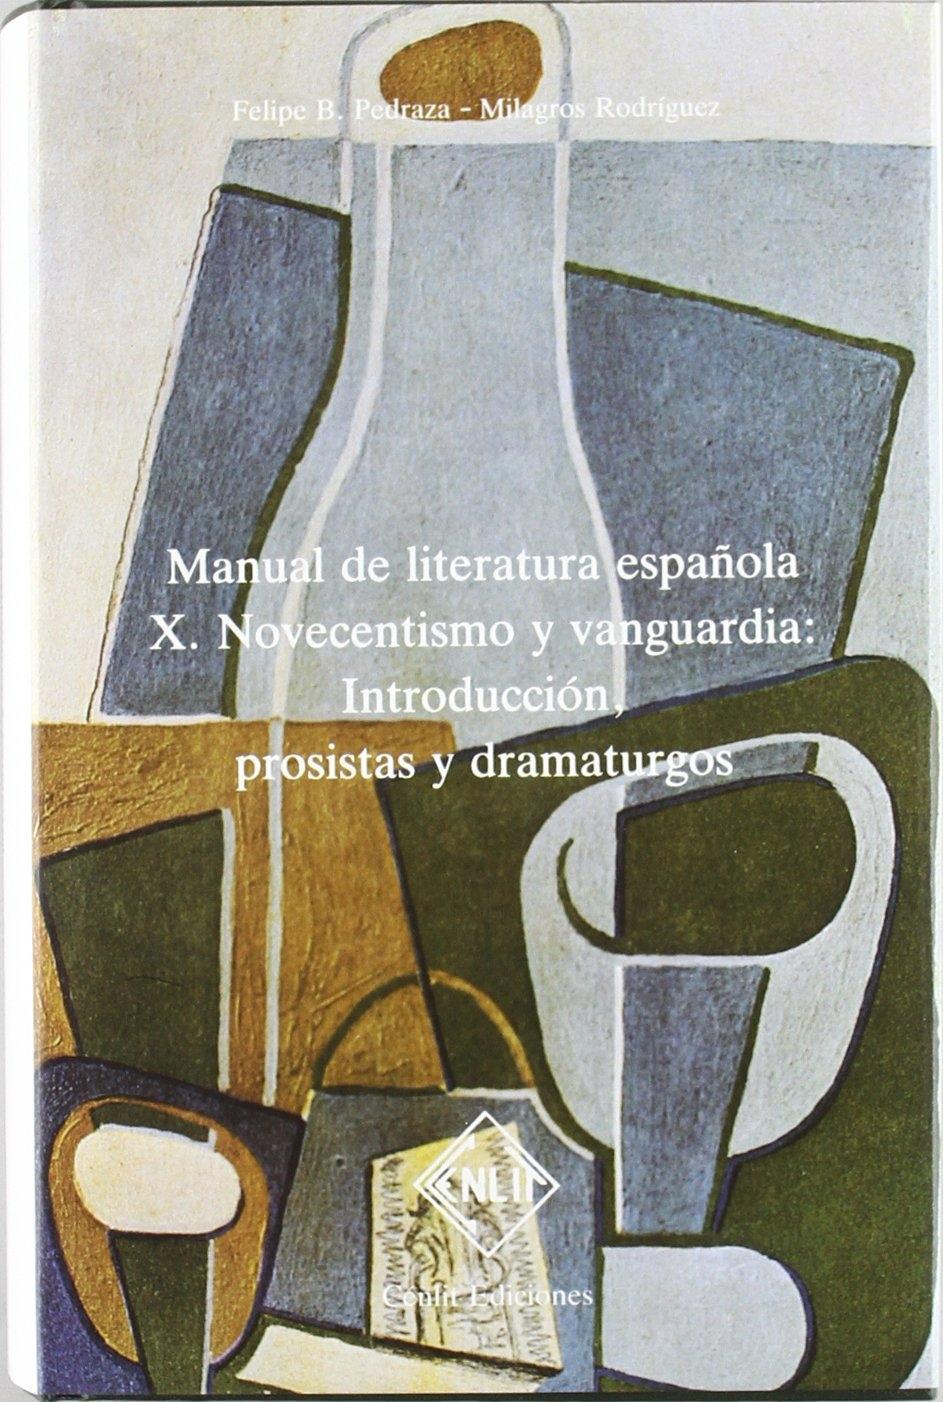 MANUAL DE LITERATURA ESPAÑOLA   X  NOVECENTISMO Y VANGUARDIA "INTRODUCCIÓN, PROSISTAS Y DRAMATURGOS"